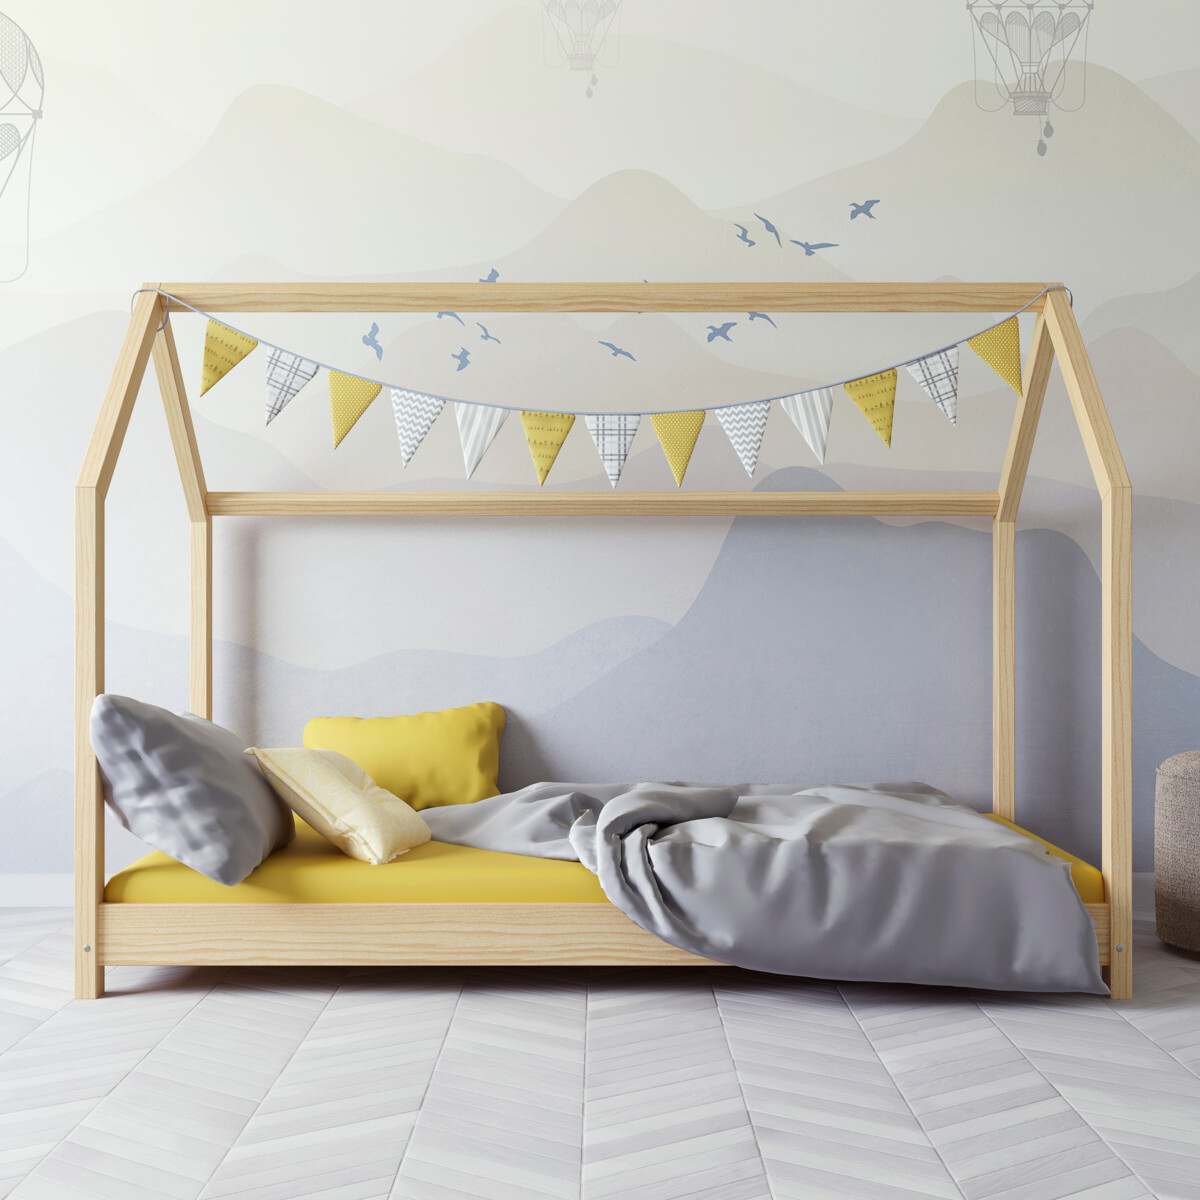 Dětská postel / domeček Bella 80 x 180 cm